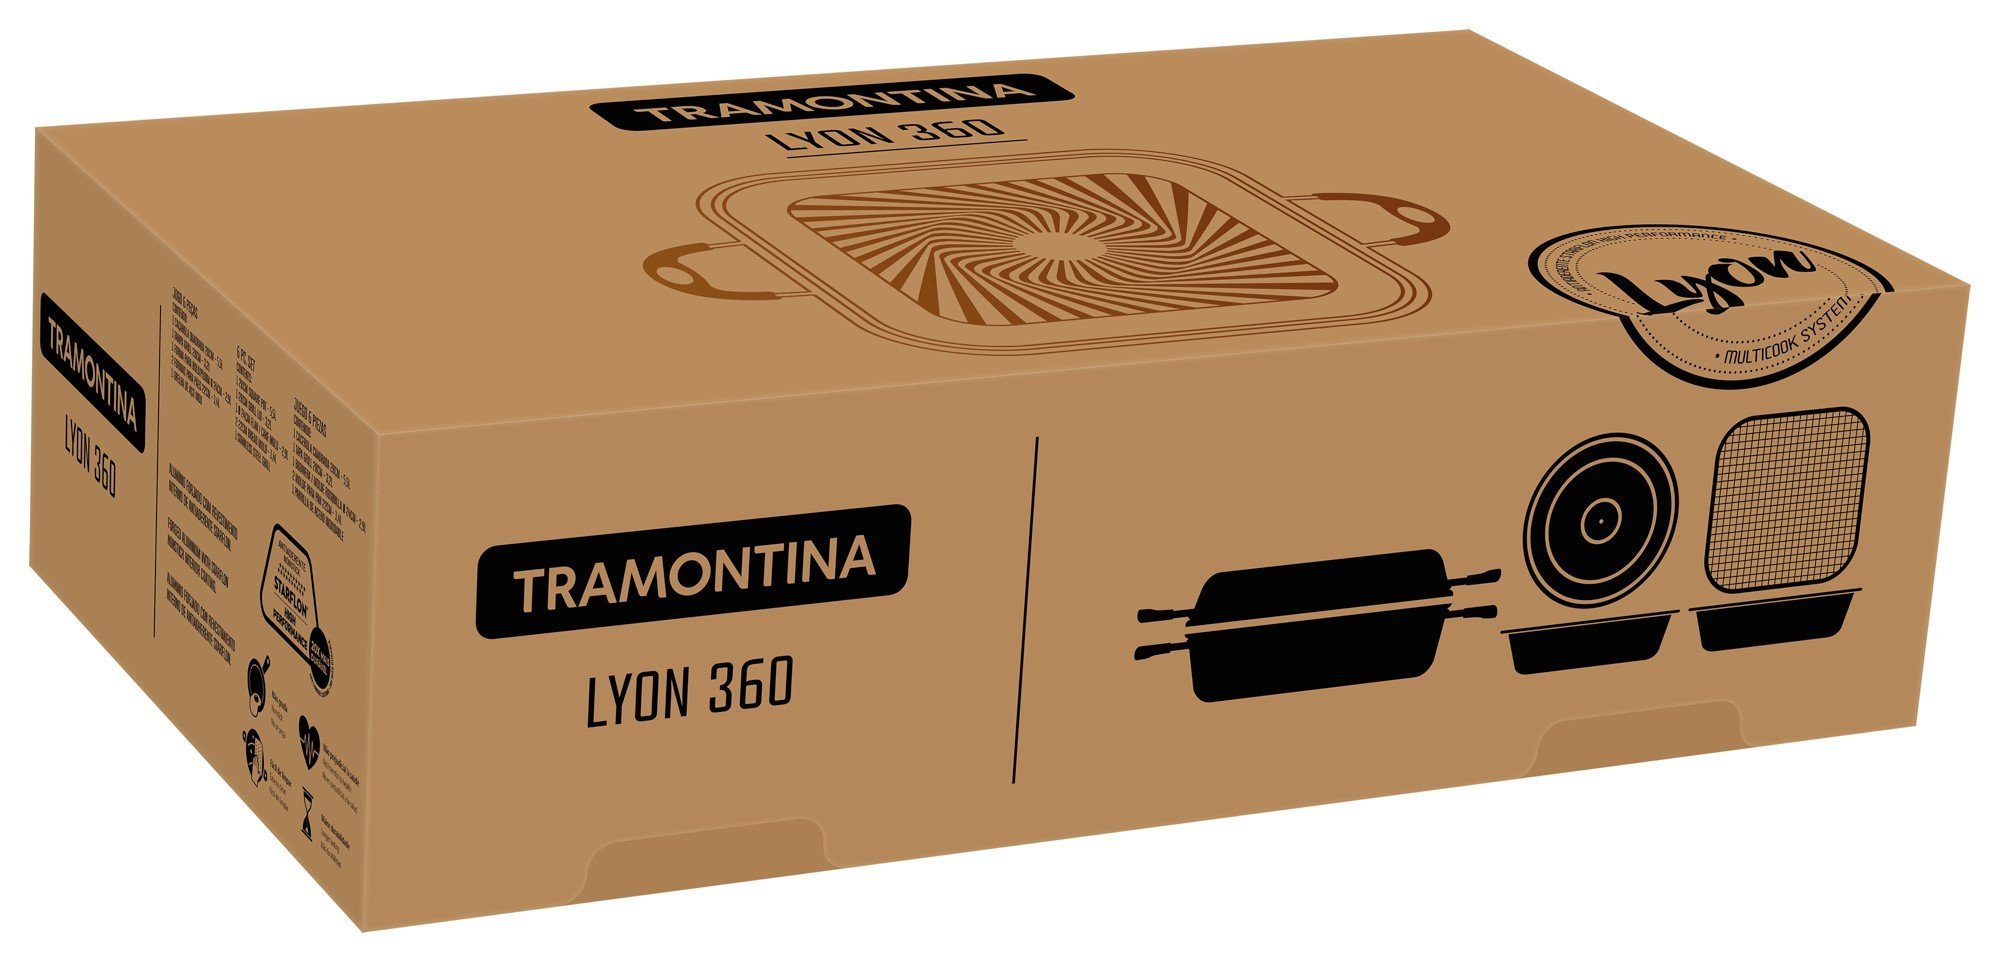 Kit Tramontina Lyon 360 6 Peças Preto